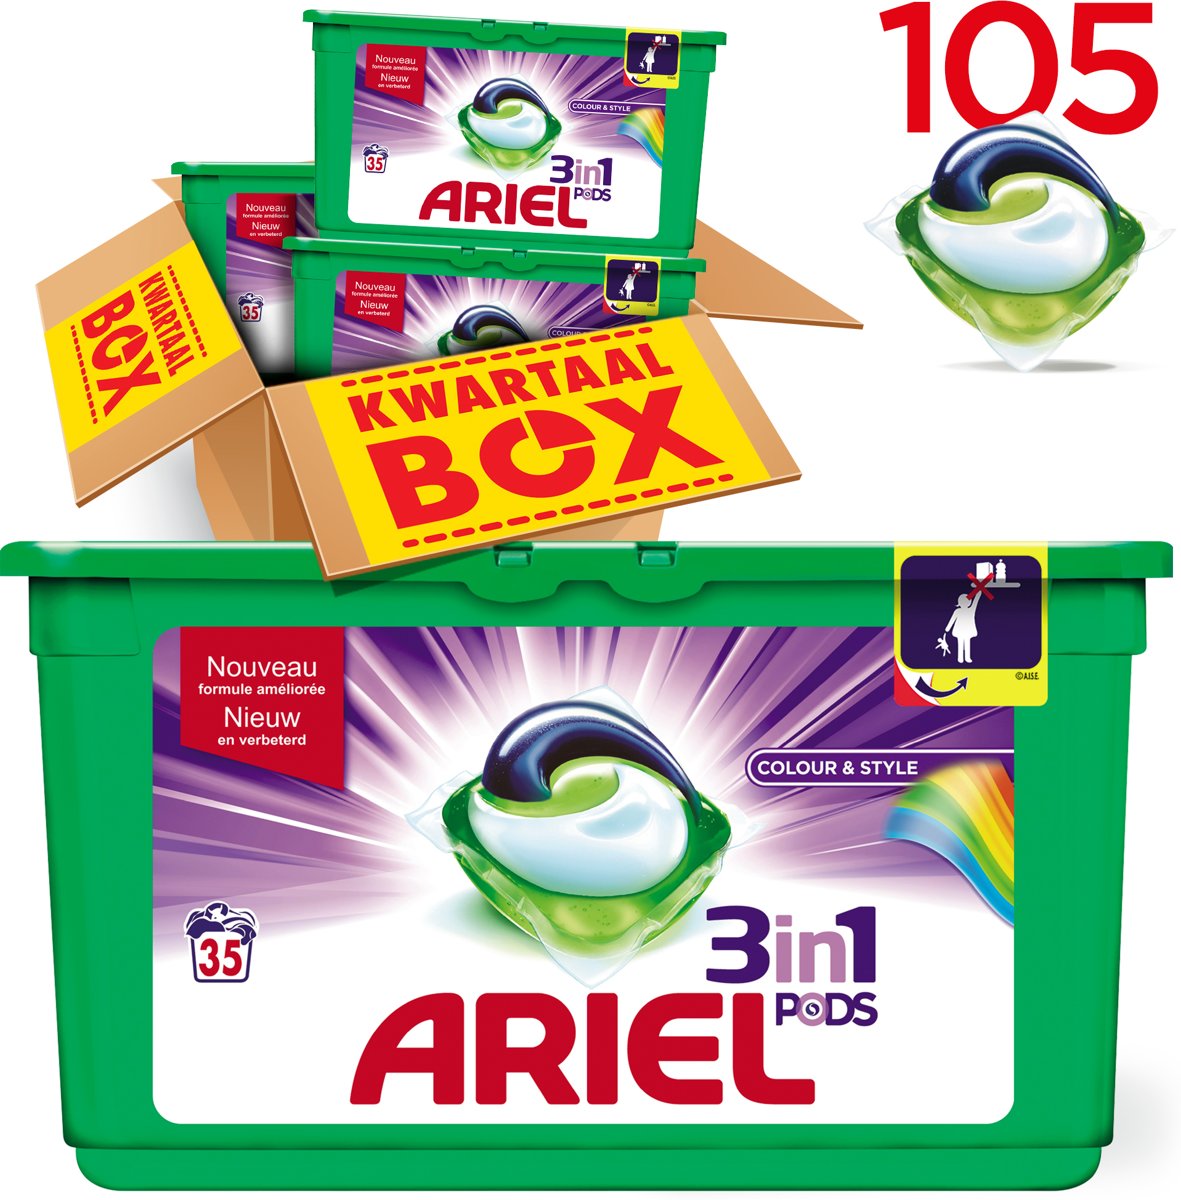 Foto van Ariel 3in1 PODS Colour & Style - Kwartaalbox 105 Wasbeurten - Wasmiddel Capsules